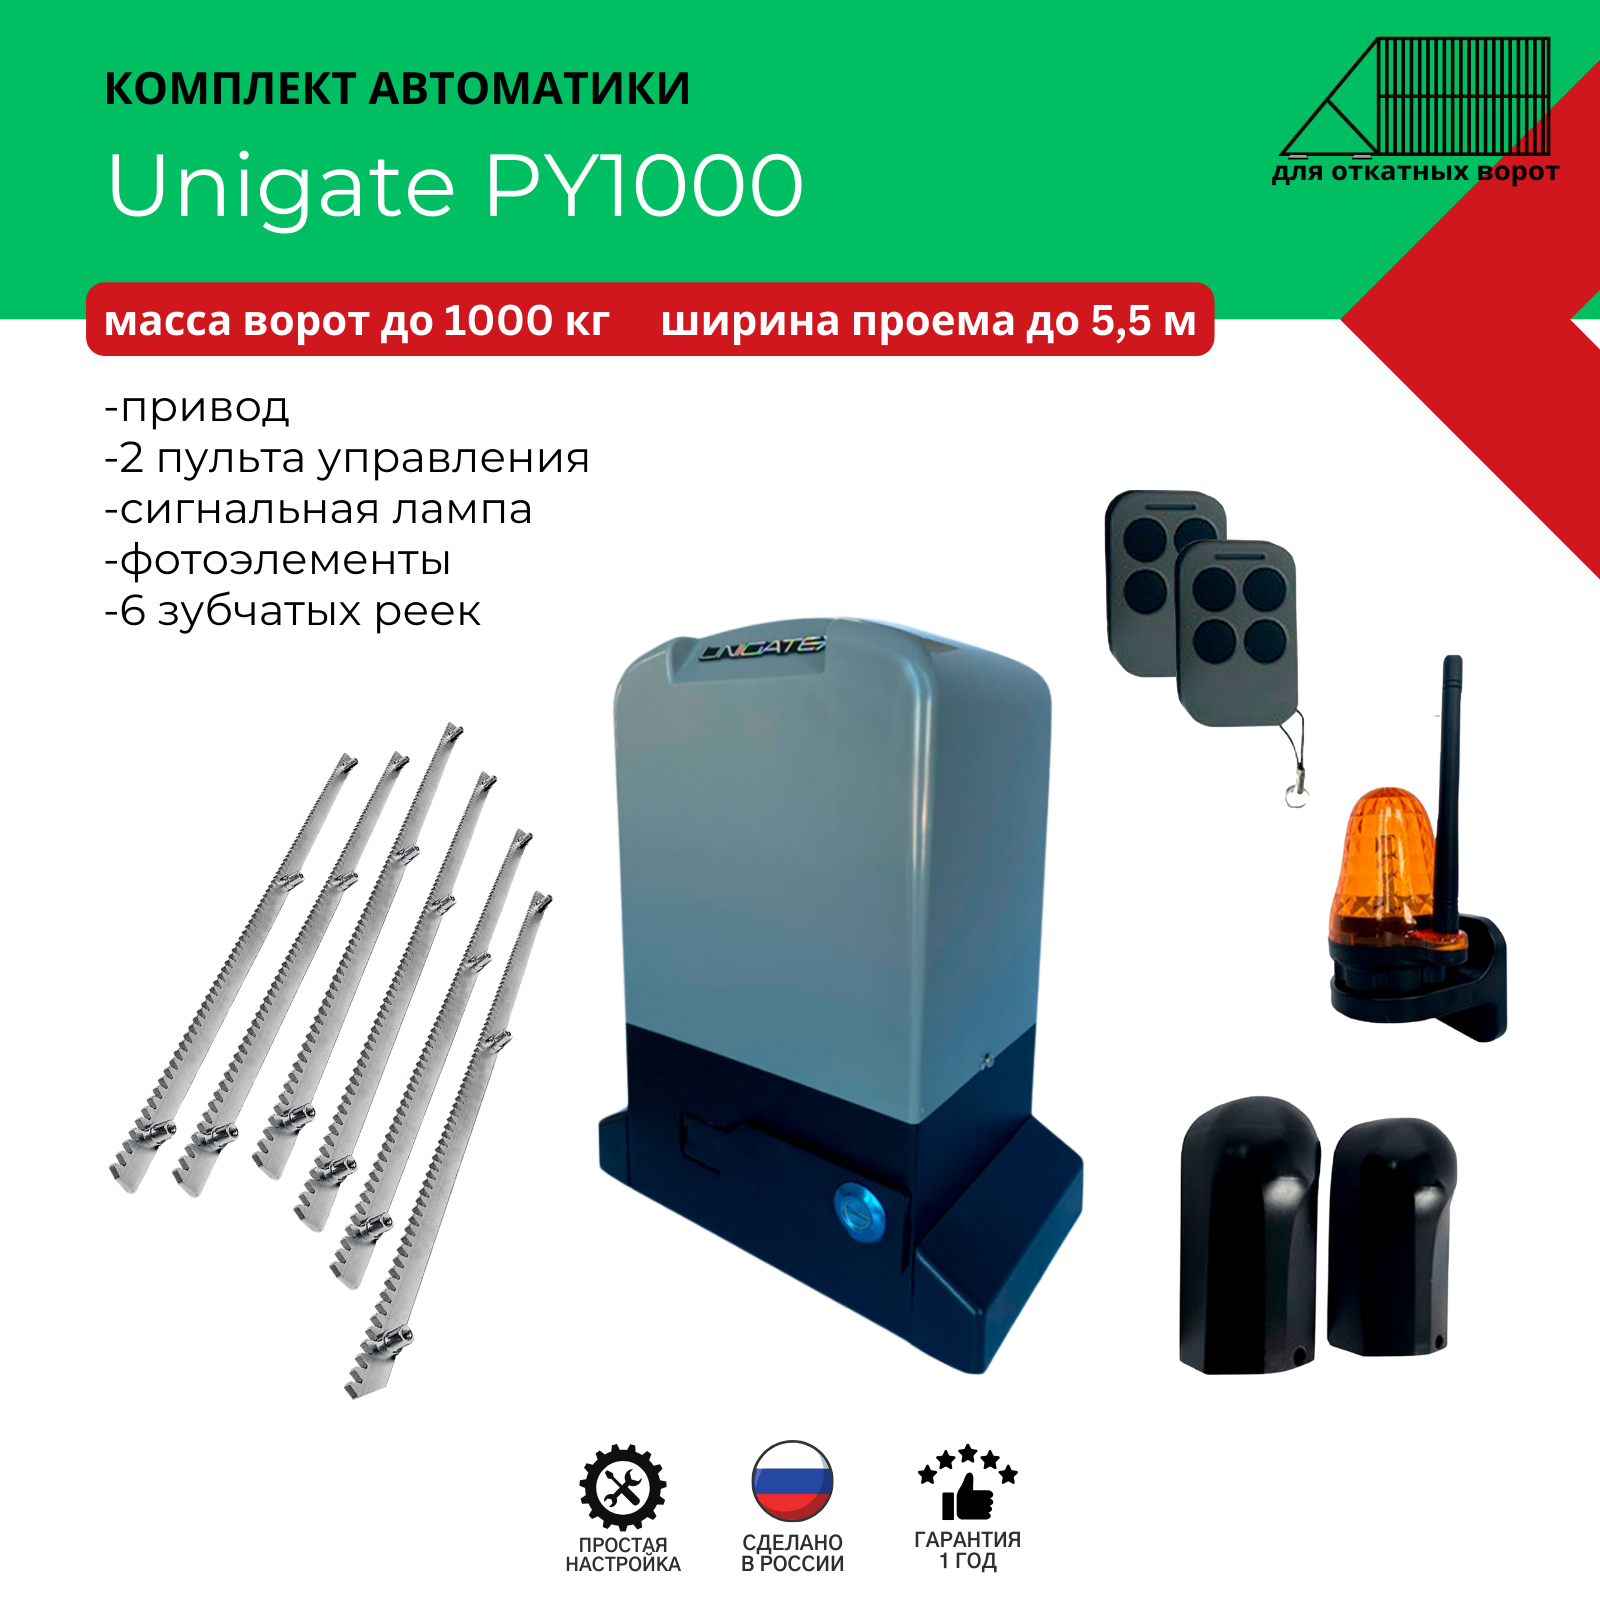 Автоматика для откатных ворот Unigate PY1000 массой до 1000кг, ширина проема 5,5м (привод, 2 пульта, фотоэлементы, сигнальная лампа, 6 зубчатых реек)